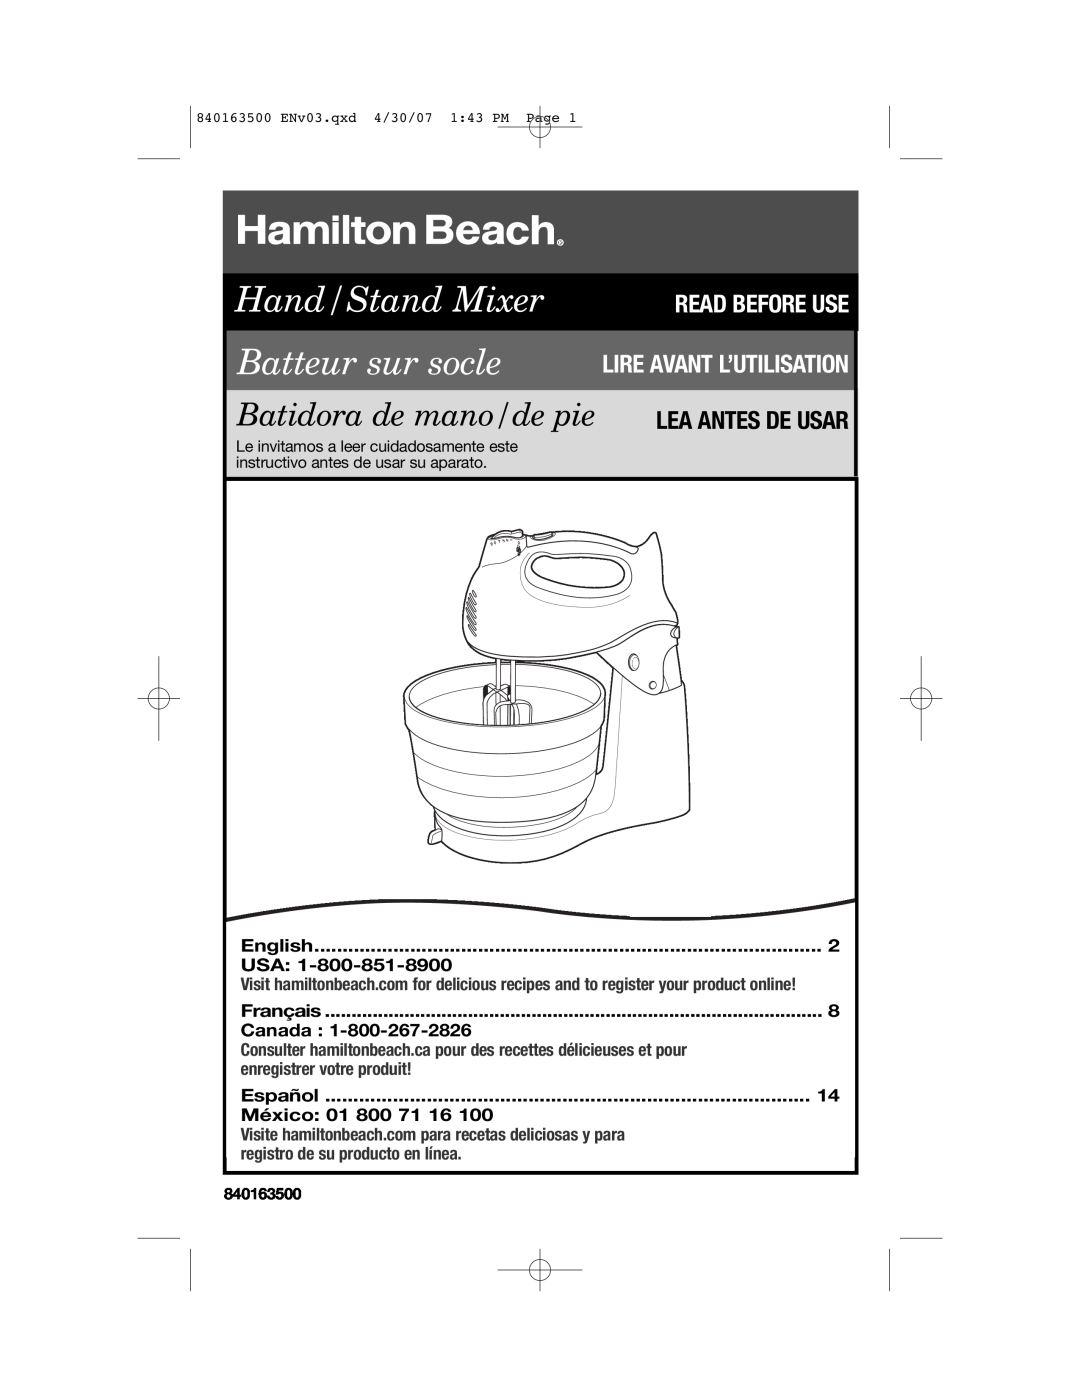 Hamilton Beach 64695N manual Lea Antes De Usar, English, Français, Canada, Español, México 01 800 71, 840163500 